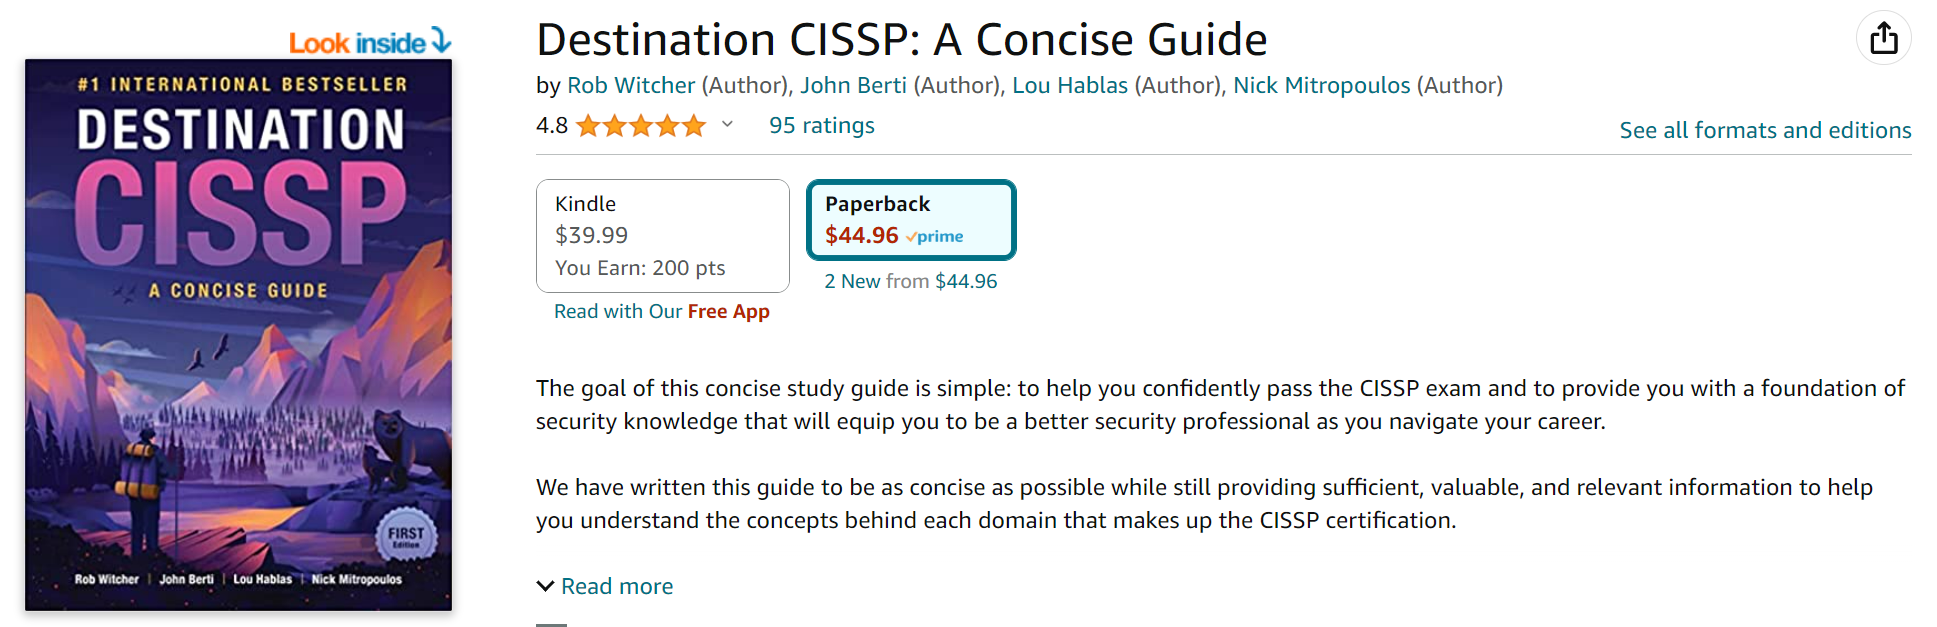 Destination CISSP - A Concise Guide - Rob Witcher